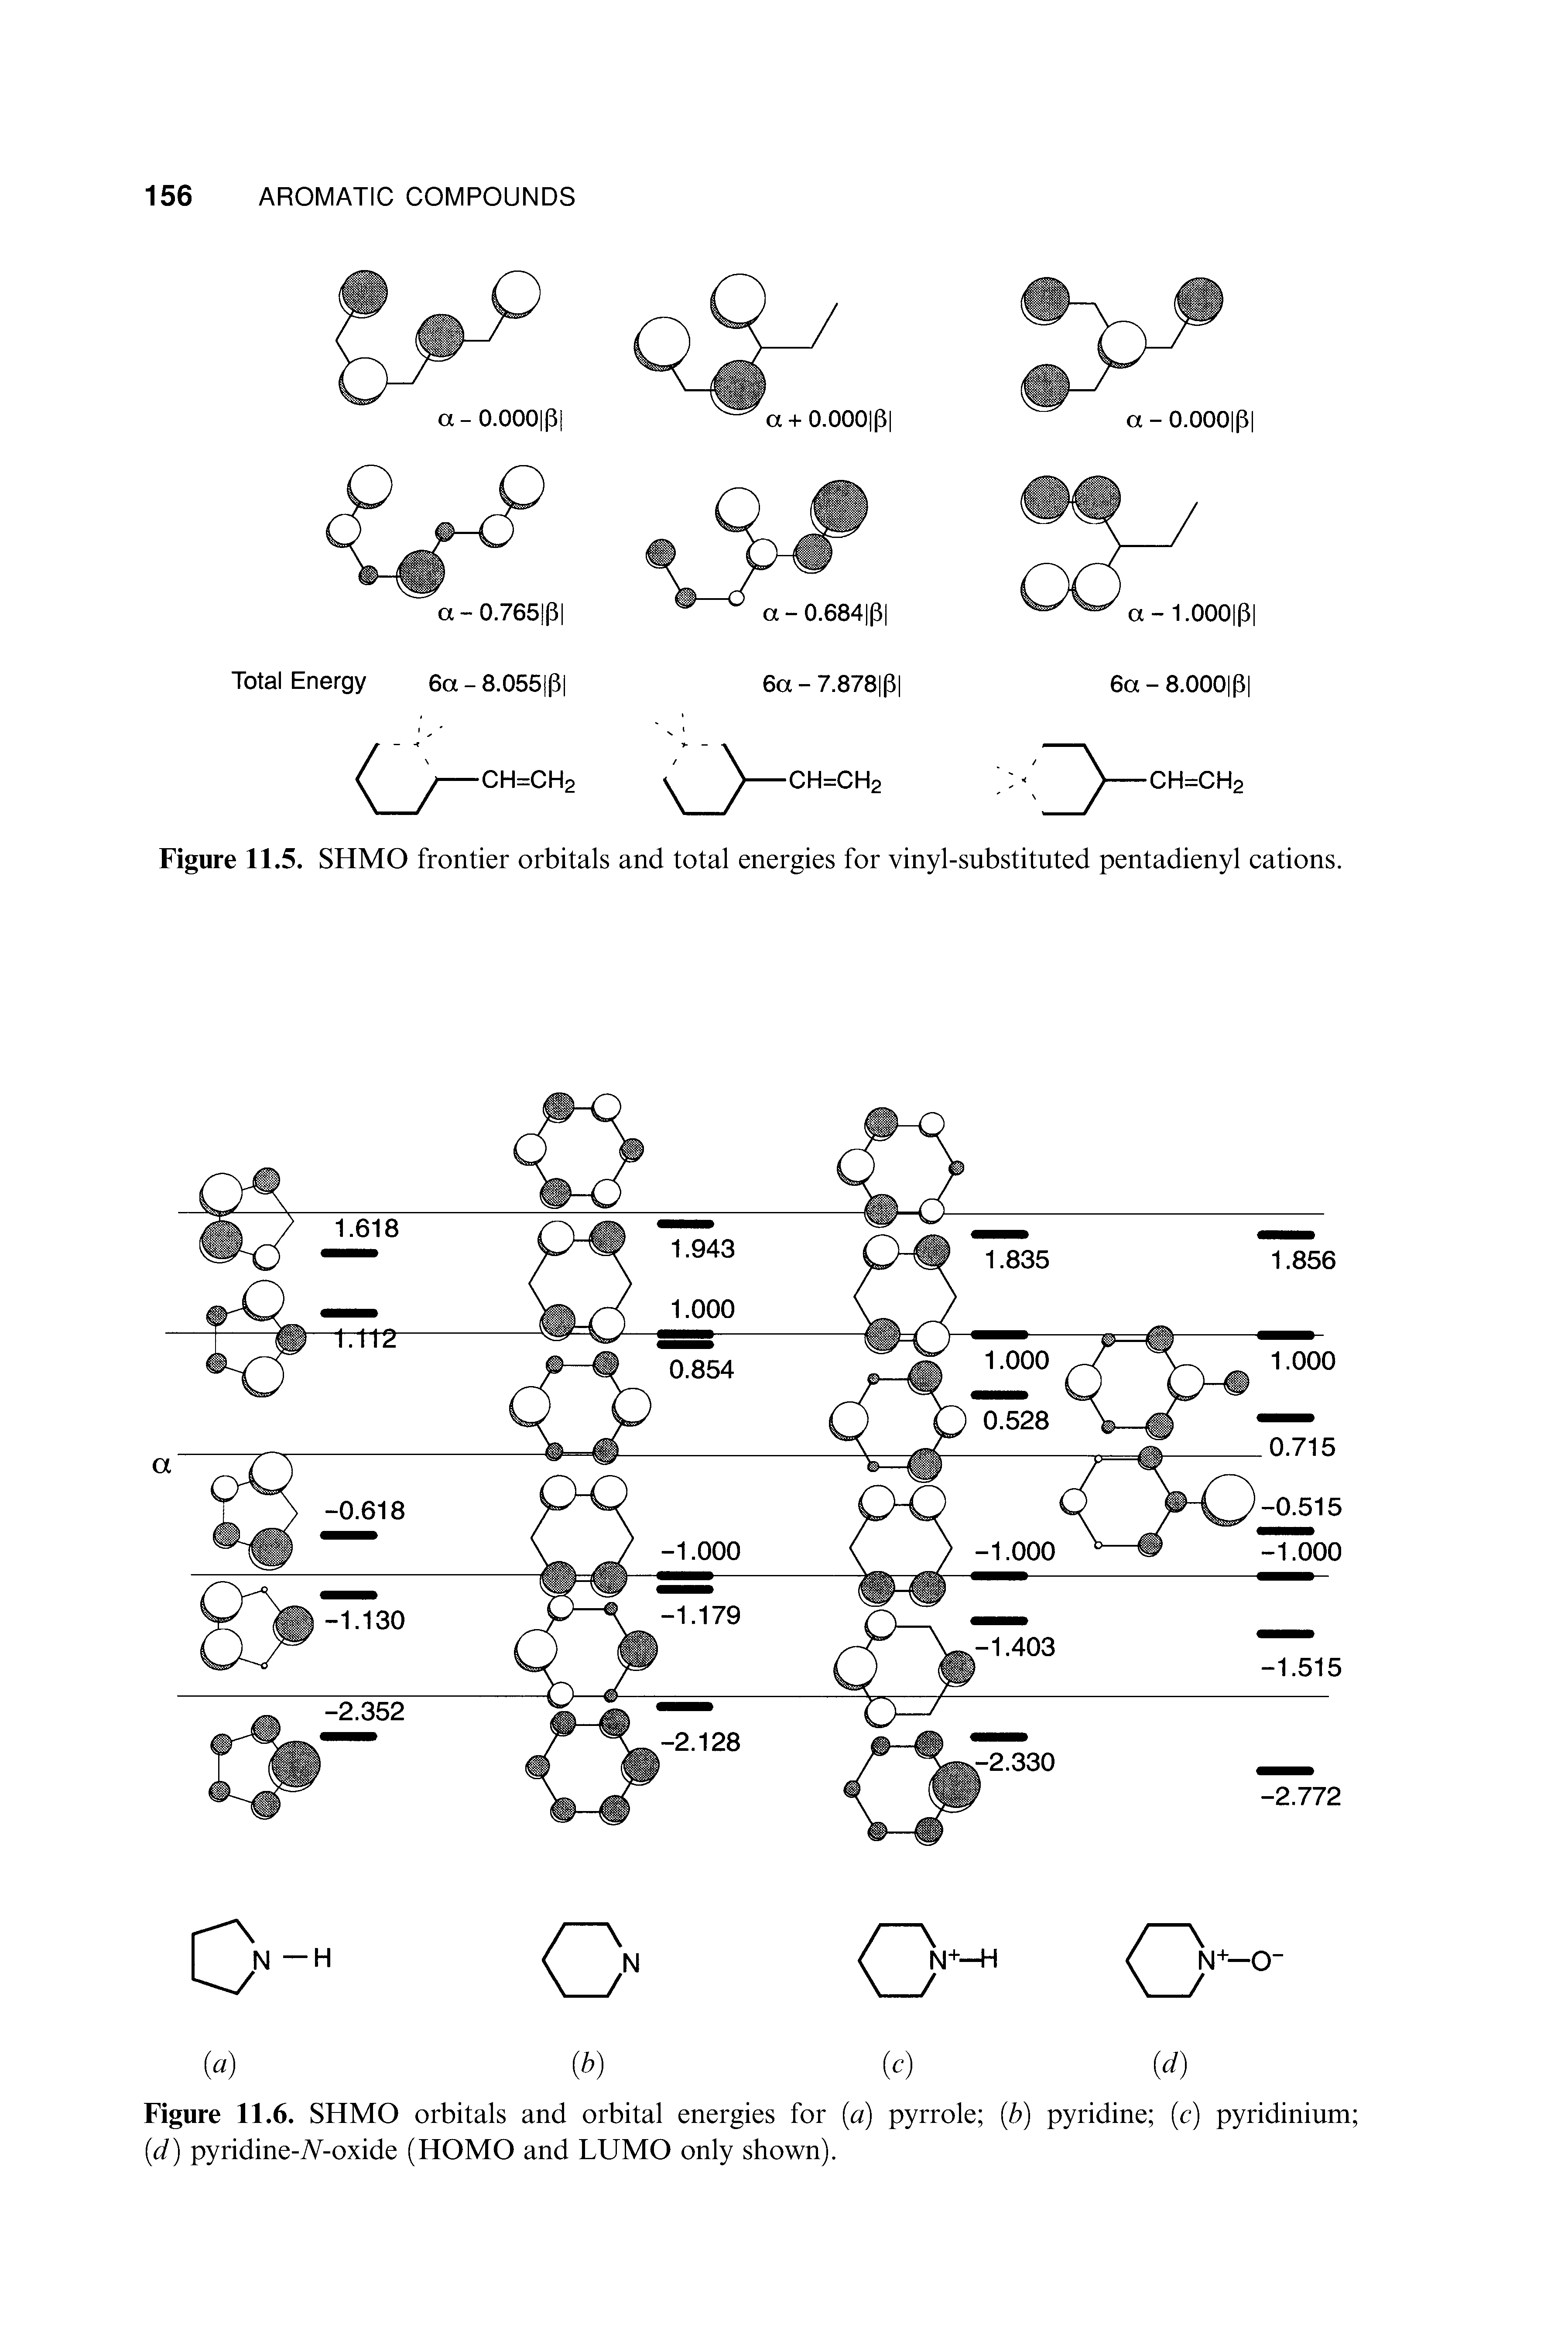 Figure 11.6. SHMO orbitals and orbital energies for (a) pyrrole (b) pyridine (c) pyridinium (id) pyridine-7V-oxide (HOMO and LUMO only shown).